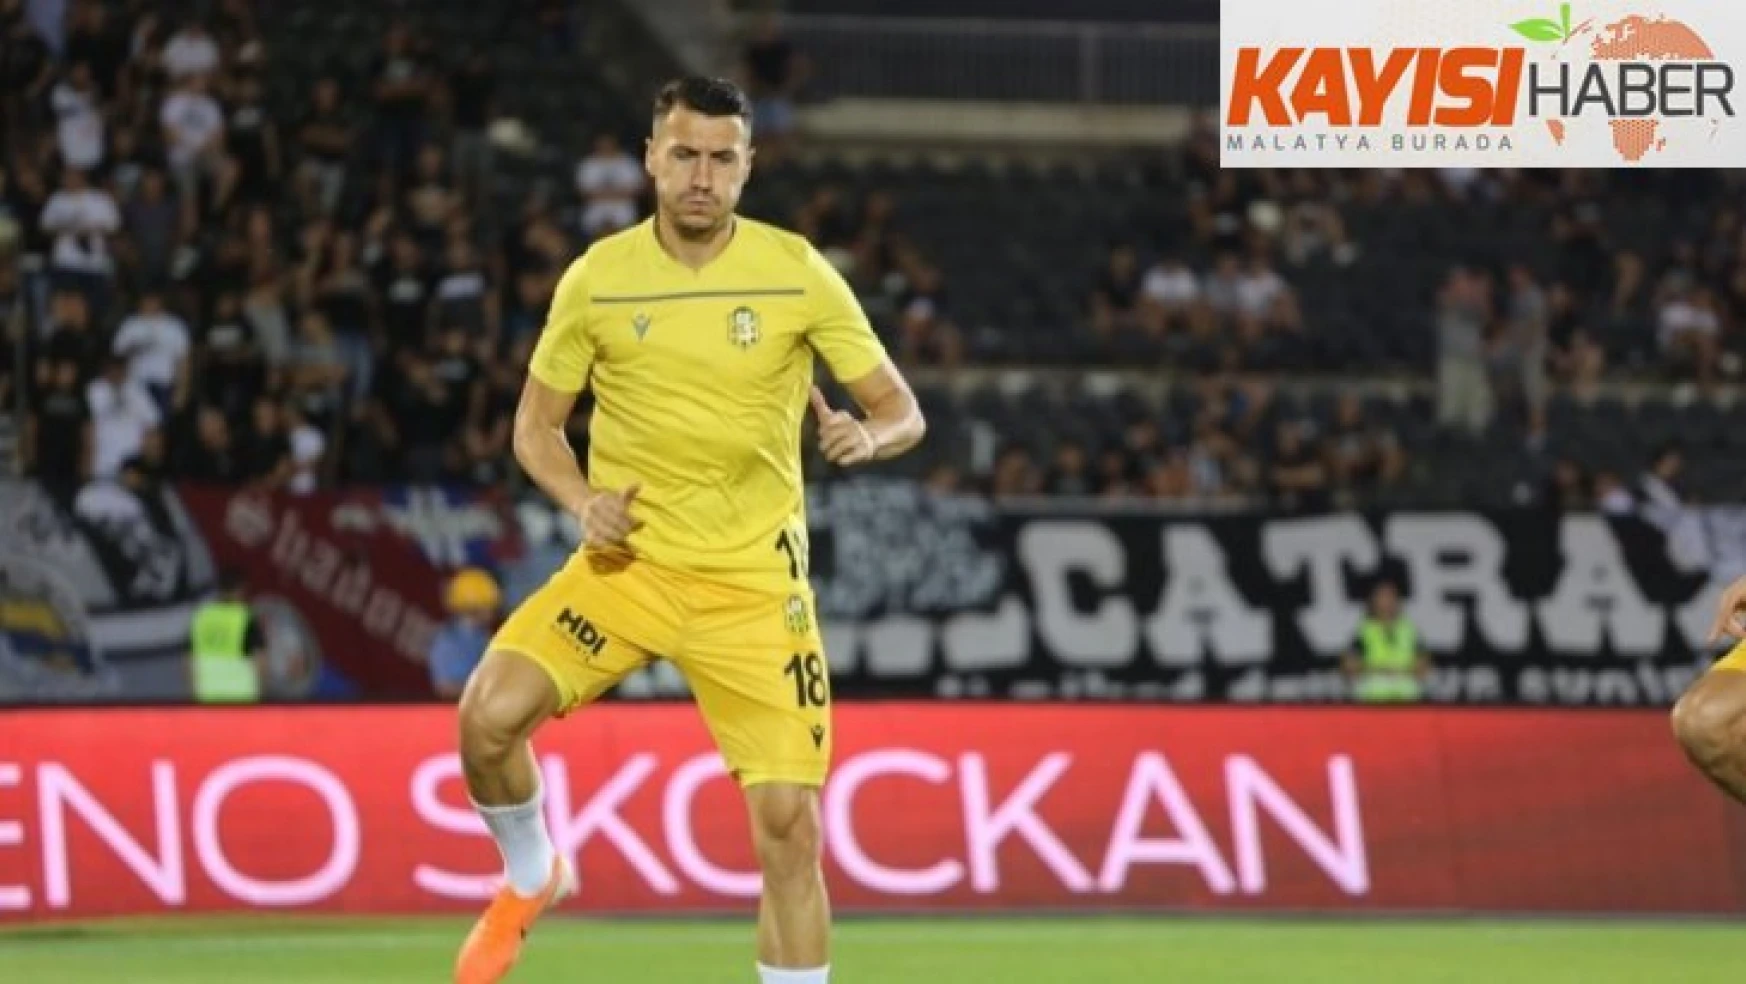 Yeni Malatyaspor, deplasmanda Partizan'a 3-1 mağlup oldu